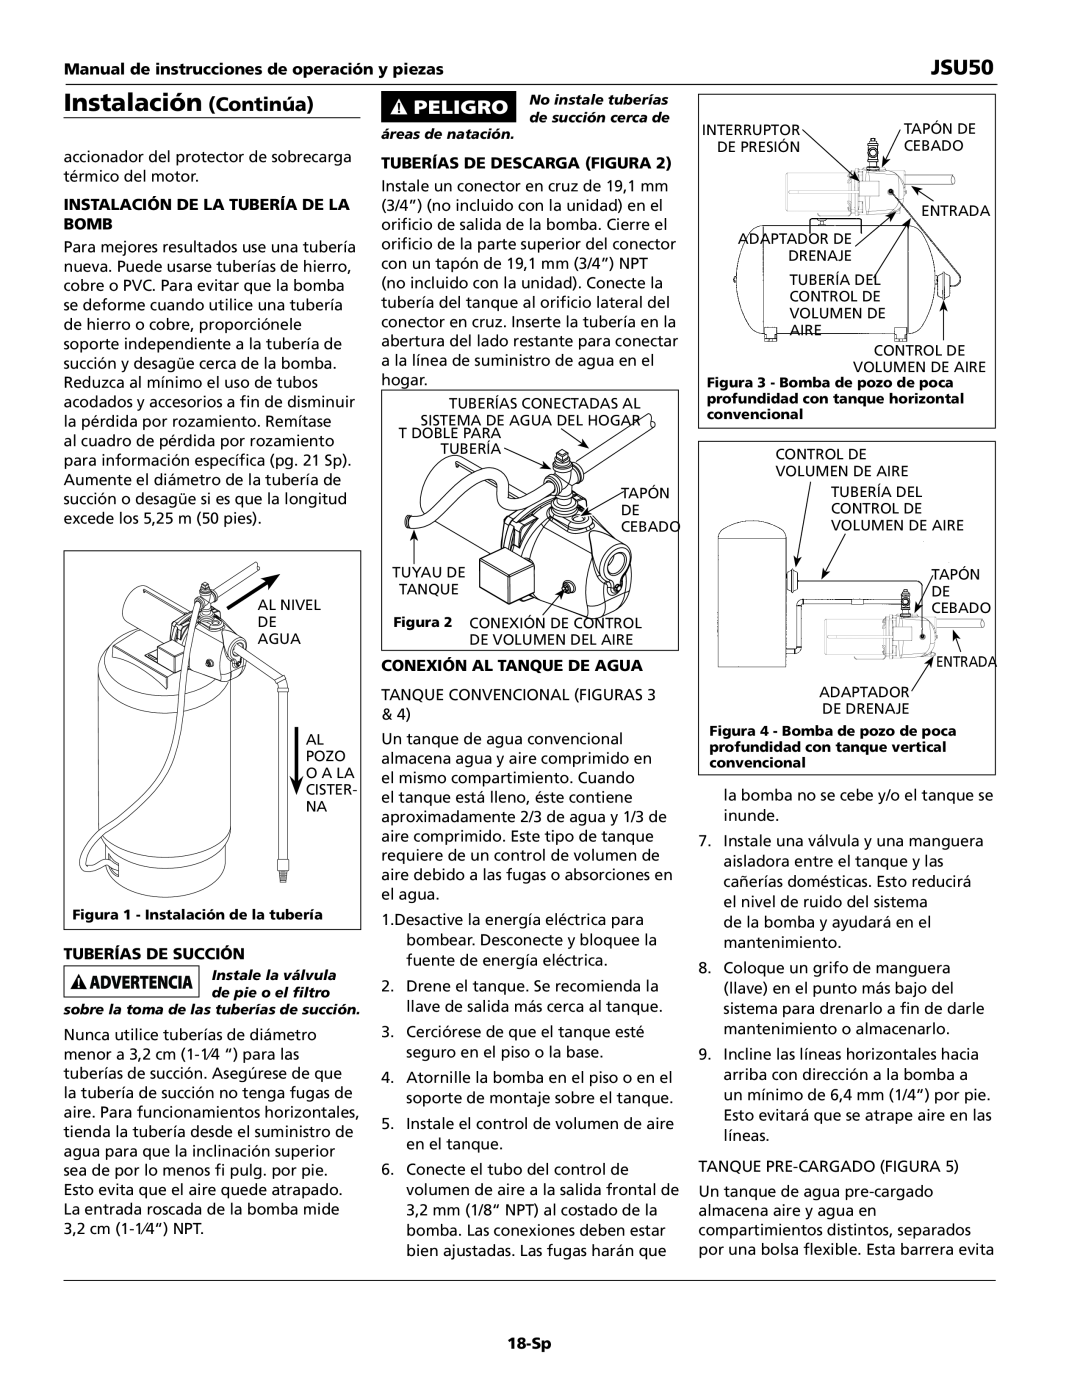 Wayne JSU50 Instalación Continúa, Manual de instrucciones de operación y piezas, tuberÍas de descarga Figura, bomb, 18-Sp 